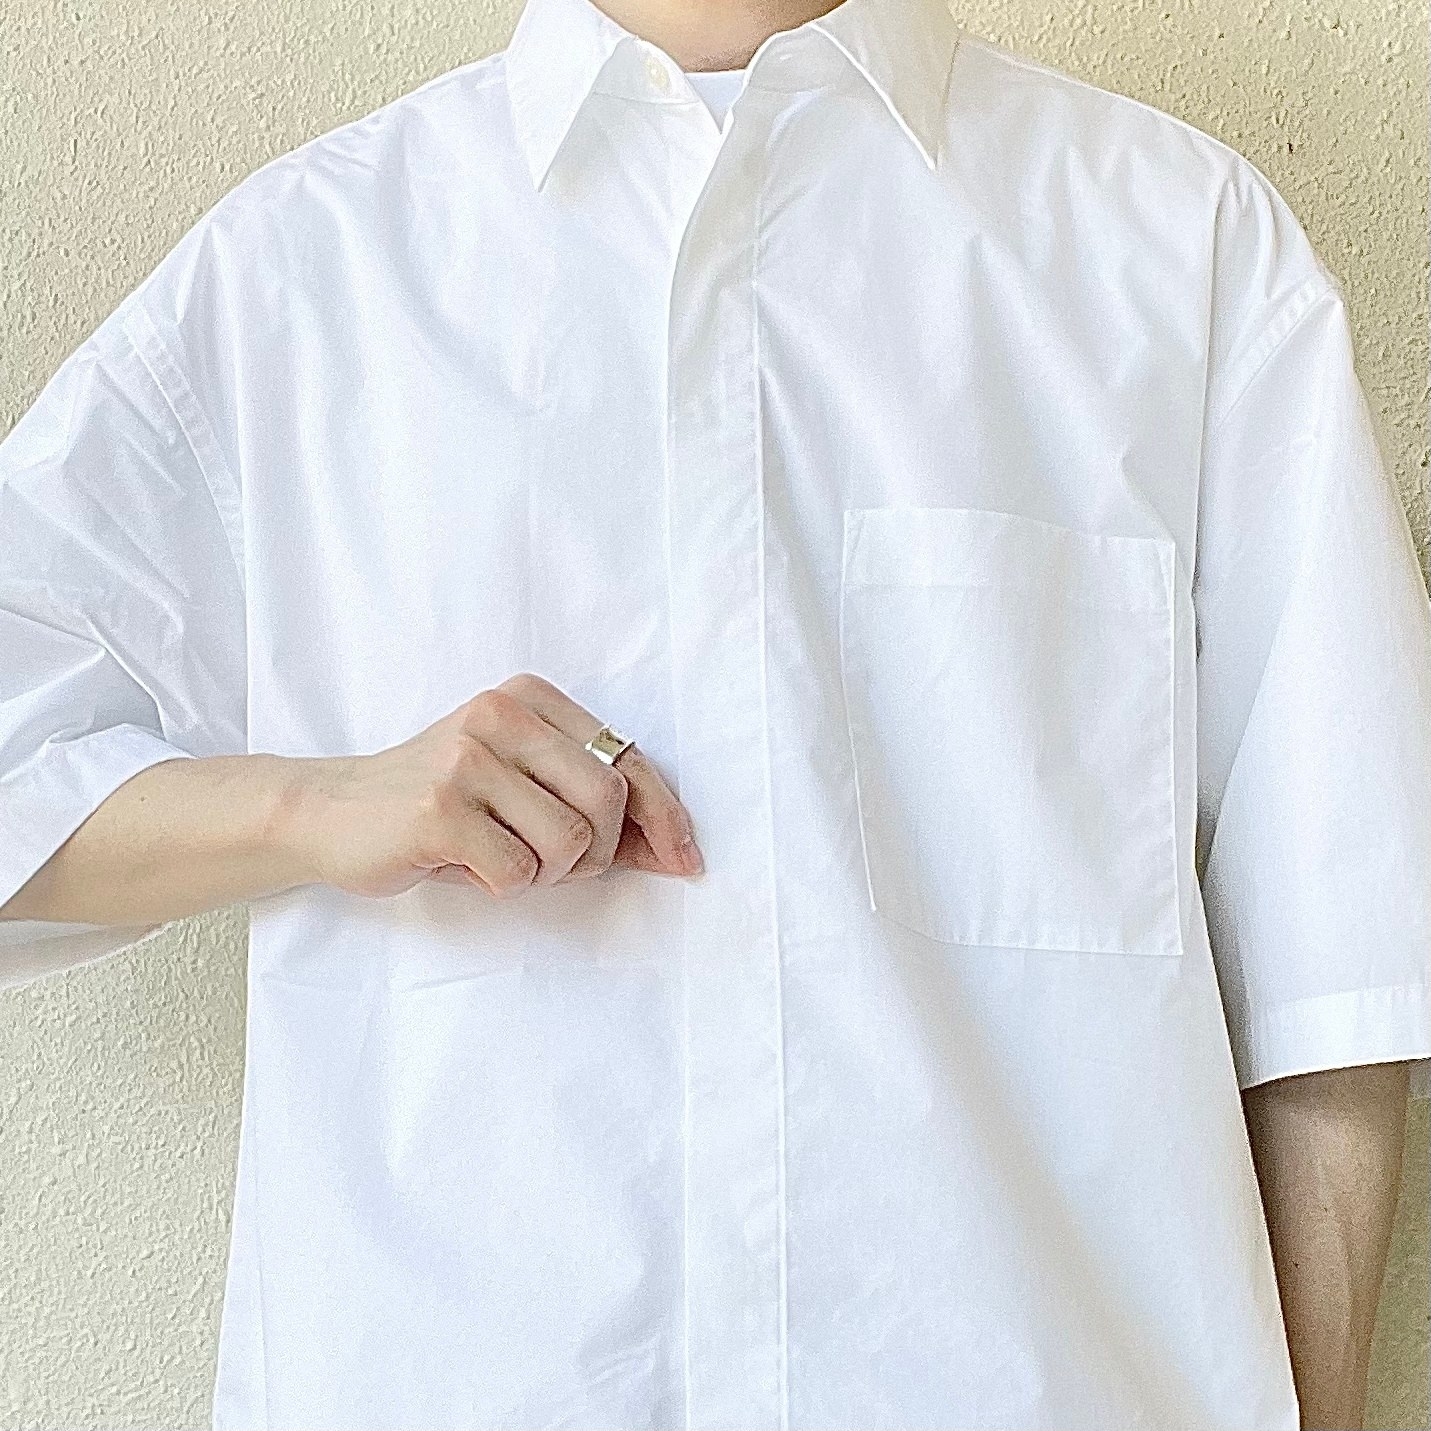 GU（ジーユー）の新作メンズアイテム「ブロードオーバーサイズシャツ（5分袖）」夏コーデにおすすめ